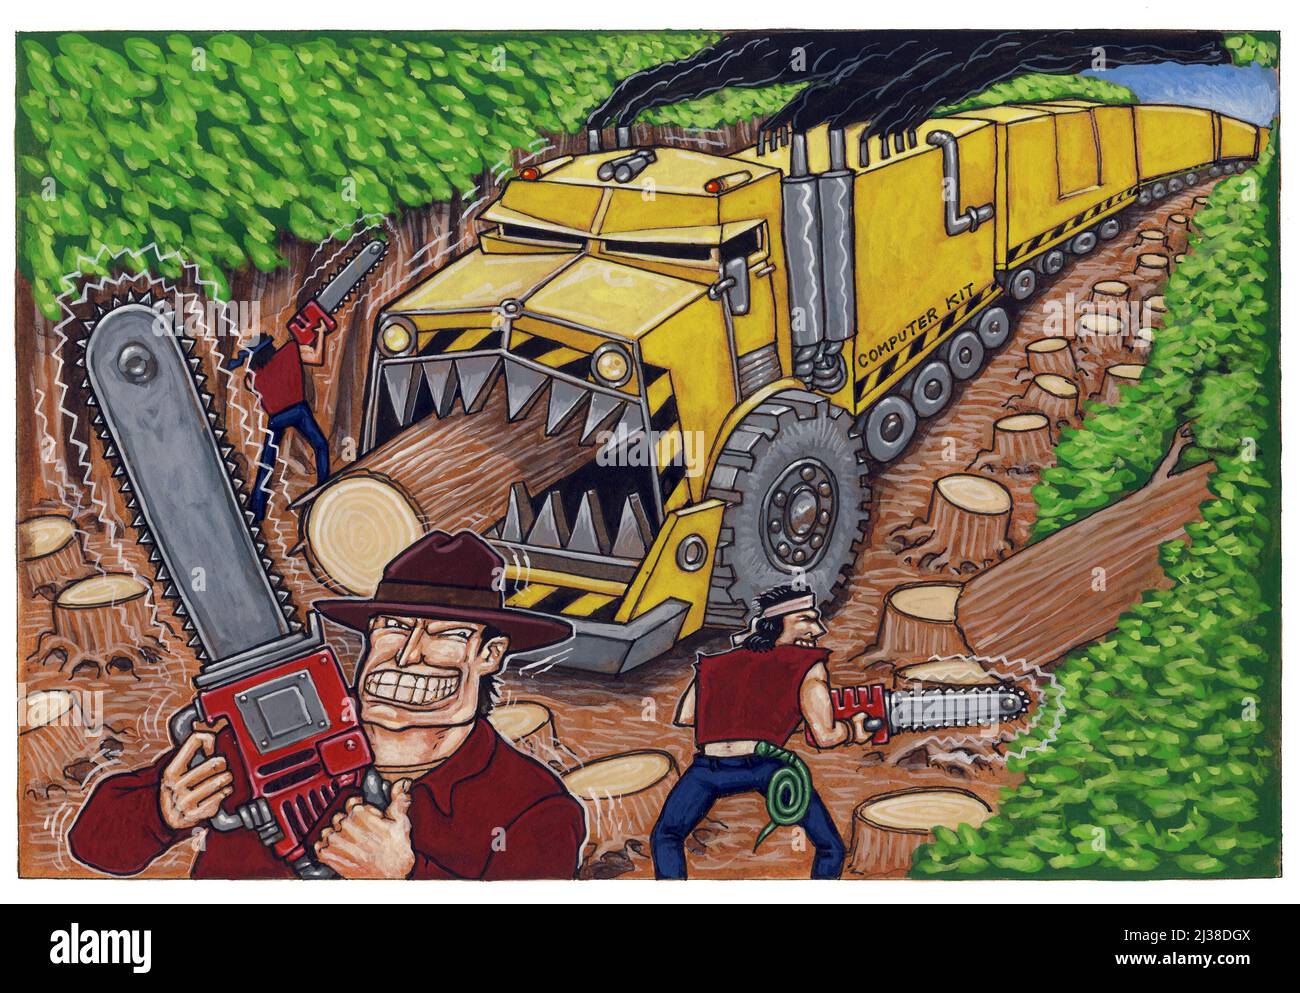 Concept art d'un camion de dessin animé alimenté des arbres, illustrant la déforestation, la destruction de la forêt tropicale, la destruction écologique, l'exploitation forestière commerciale. Banque D'Images